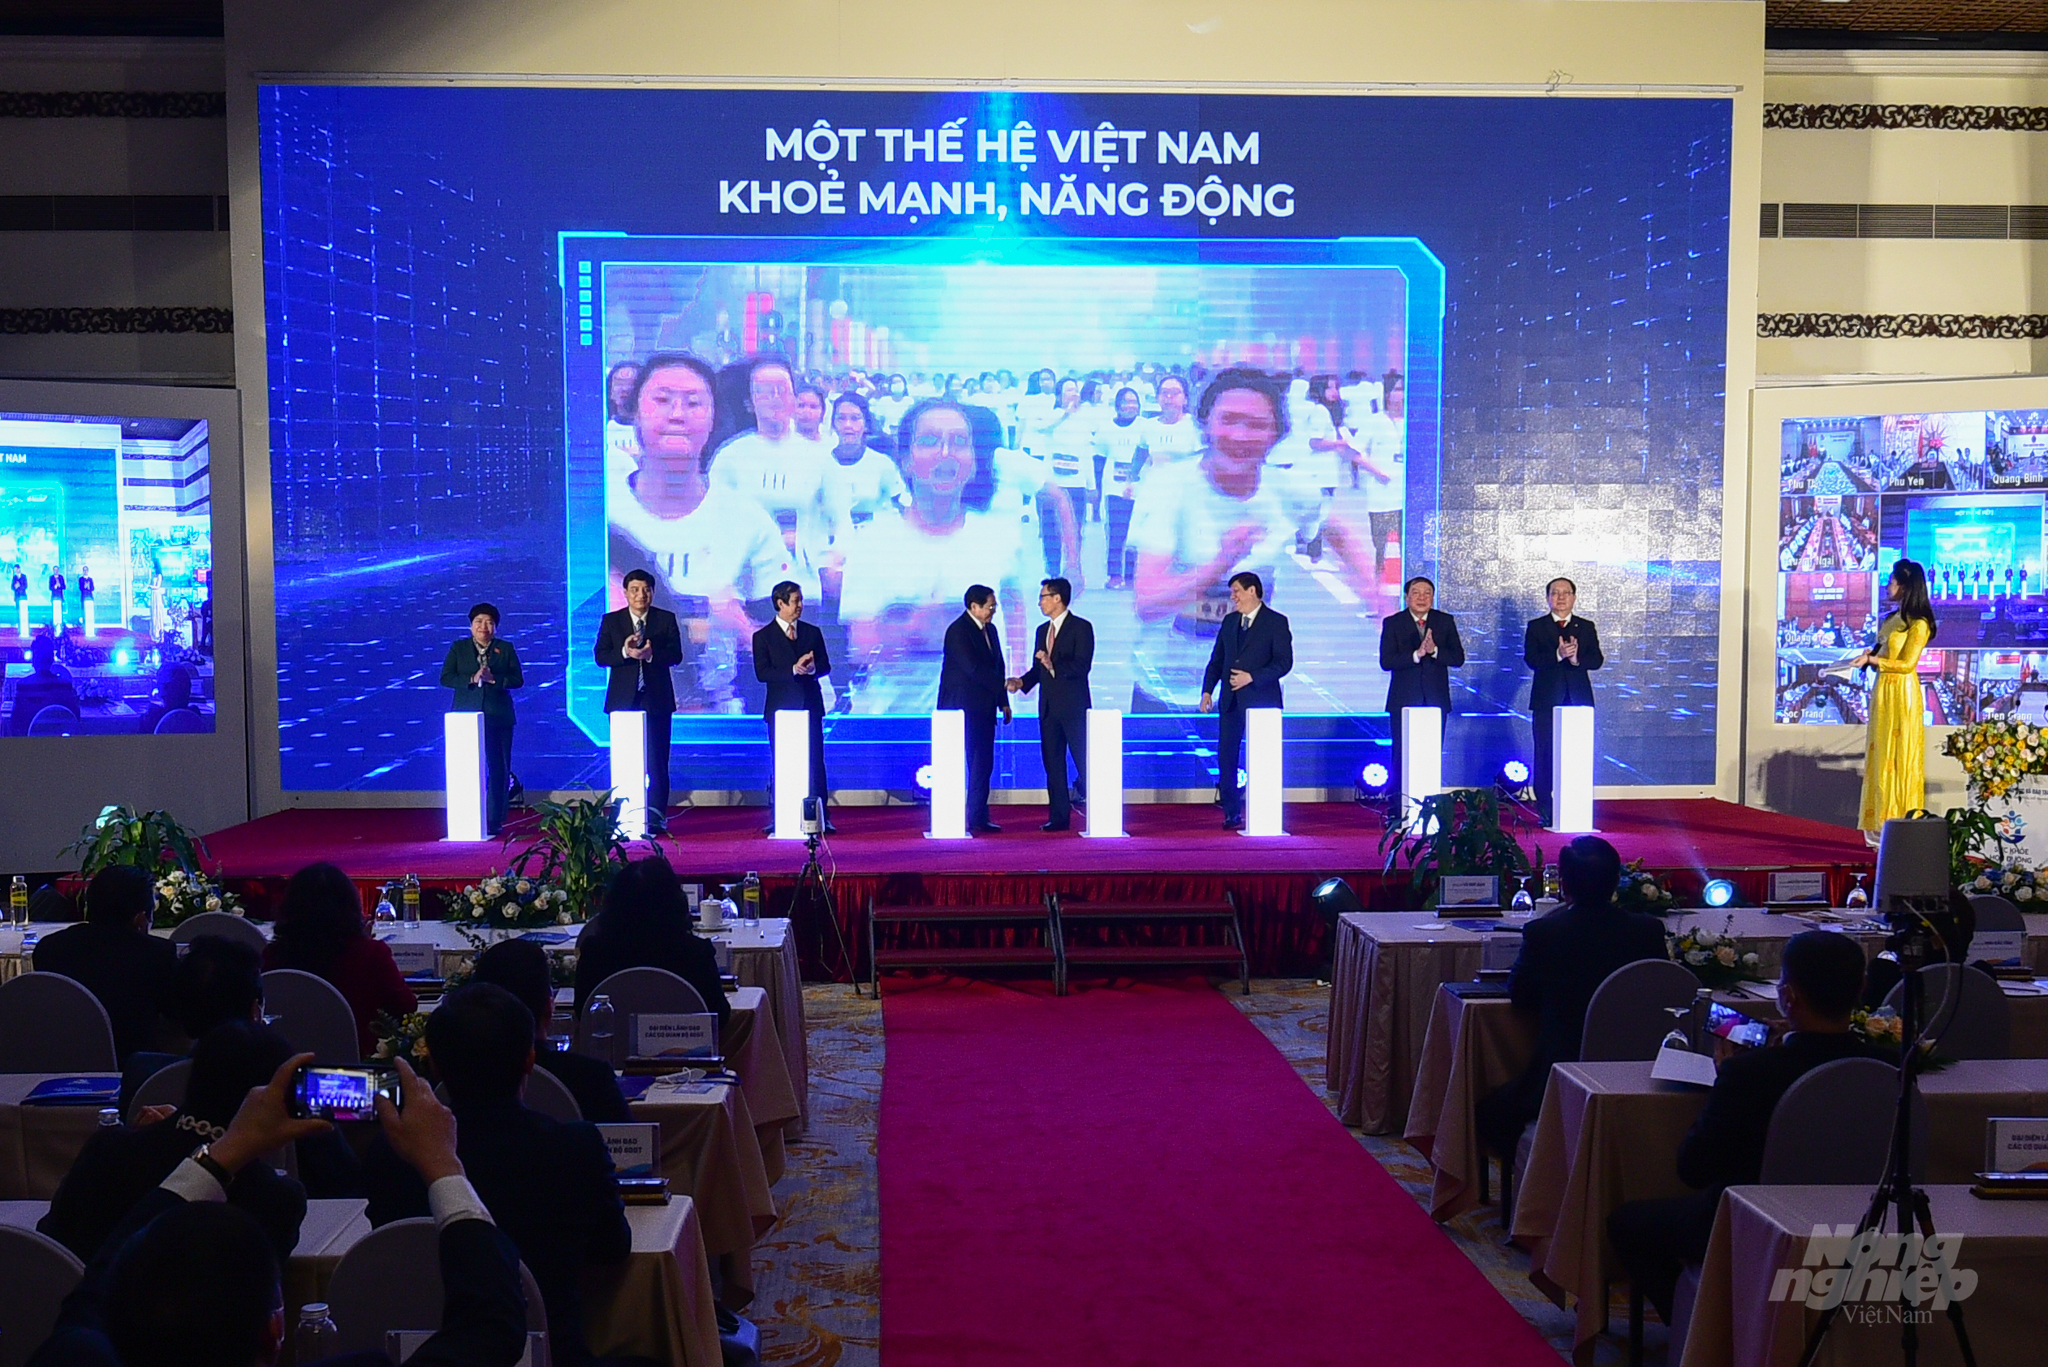 Thủ tướng Phạm Minh Chính, Phó Thủ tướng Vũ Đức Đam cùng các đại diện bộ, ngành, cơ quan bấm nút công bố Chương trình sức khỏe học đường giai đoạn 2021-2025. Ảnh: Tùng Đinh.